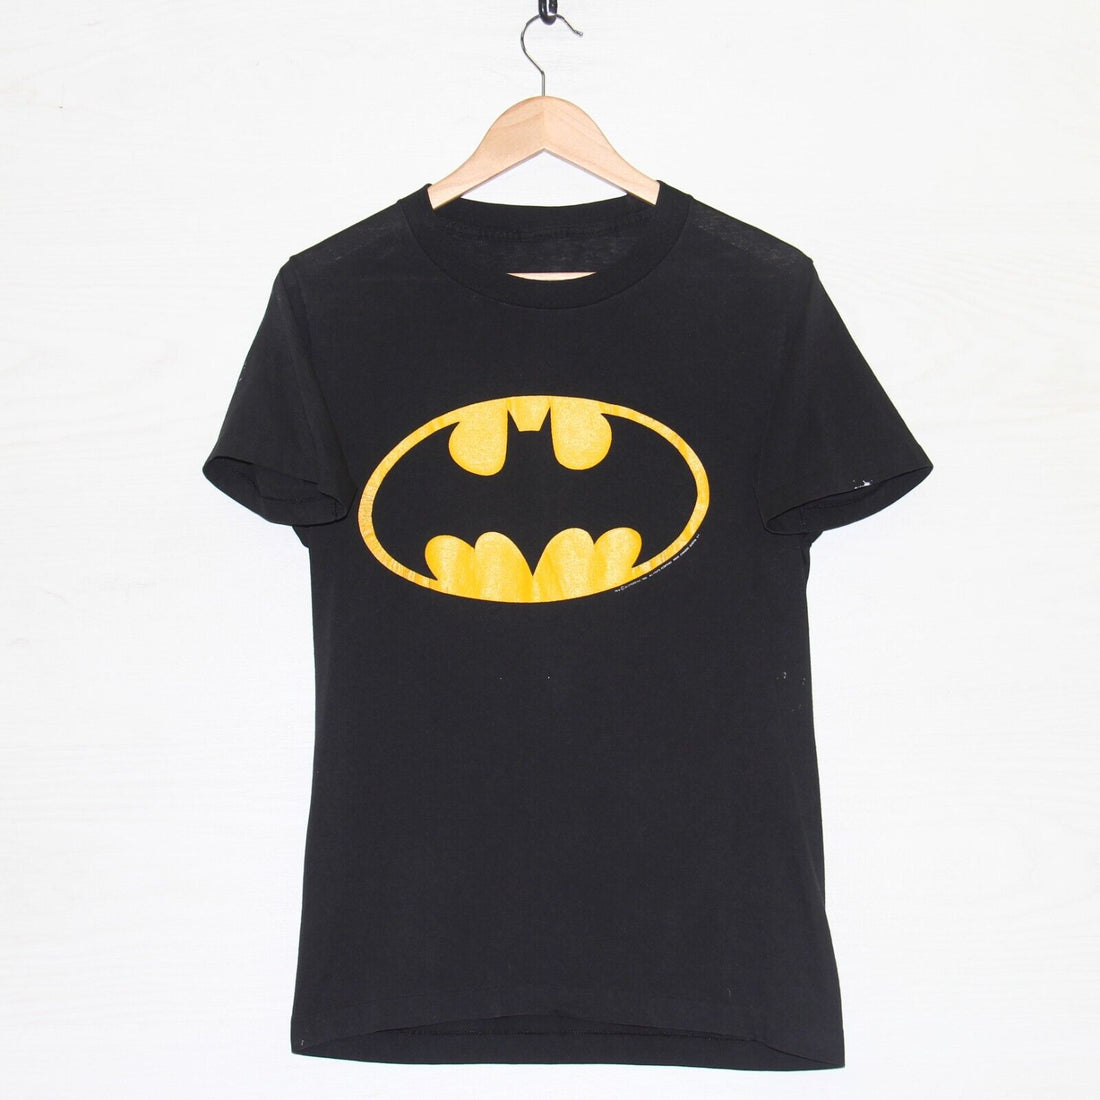 Vintage Batman DC Comics Changes T-Shirt Size Medium 1988 80s Superhero